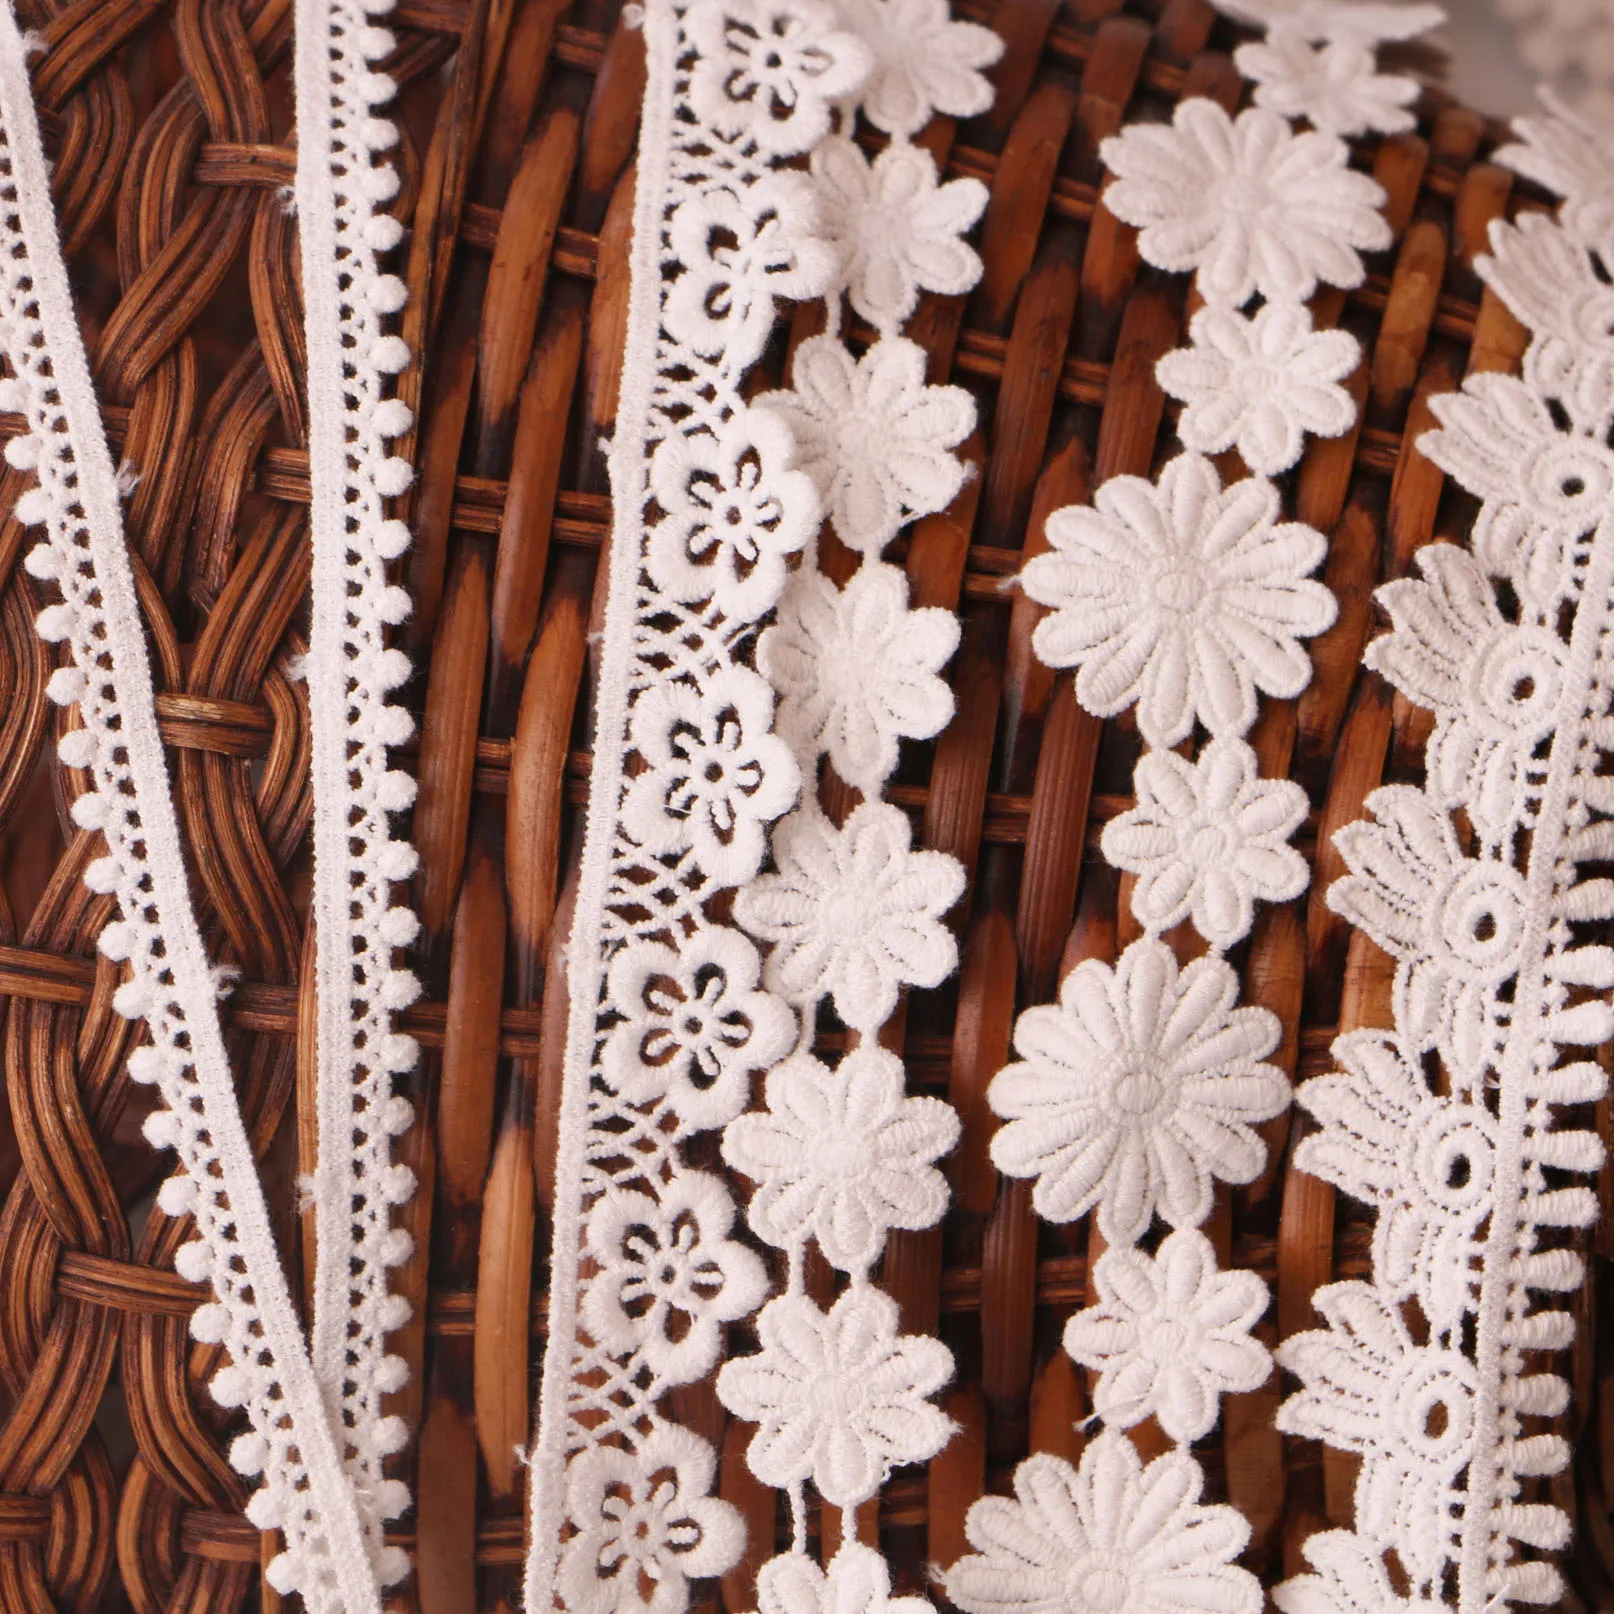 2 ярда белая кружевная ткань 3,5 см Ширина хлопок вышитые Швейные кружевные ленты с отделкой платье кружево своими руками одежда шторы аксессуары